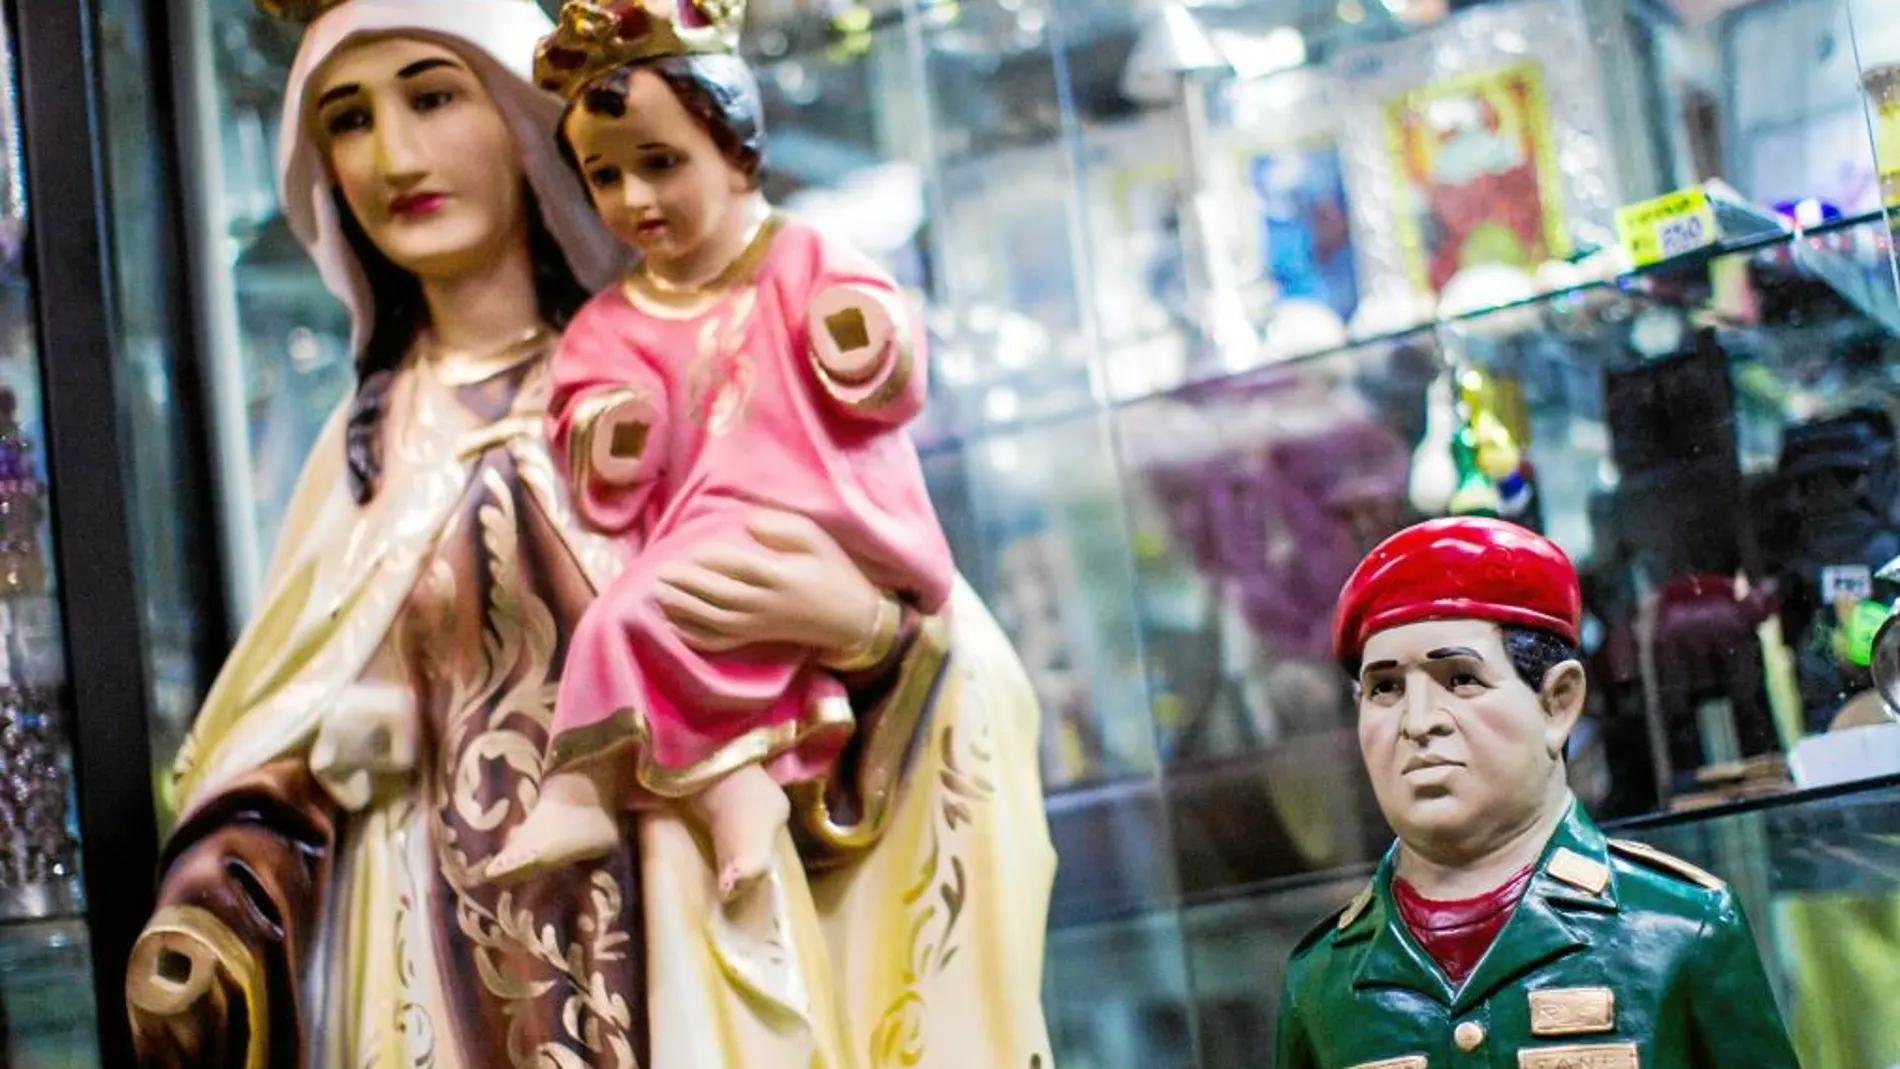 Una figura del fallecido presidente Chávez junto a la de la Virgen, en una tienda de articulos religosos en Caracas